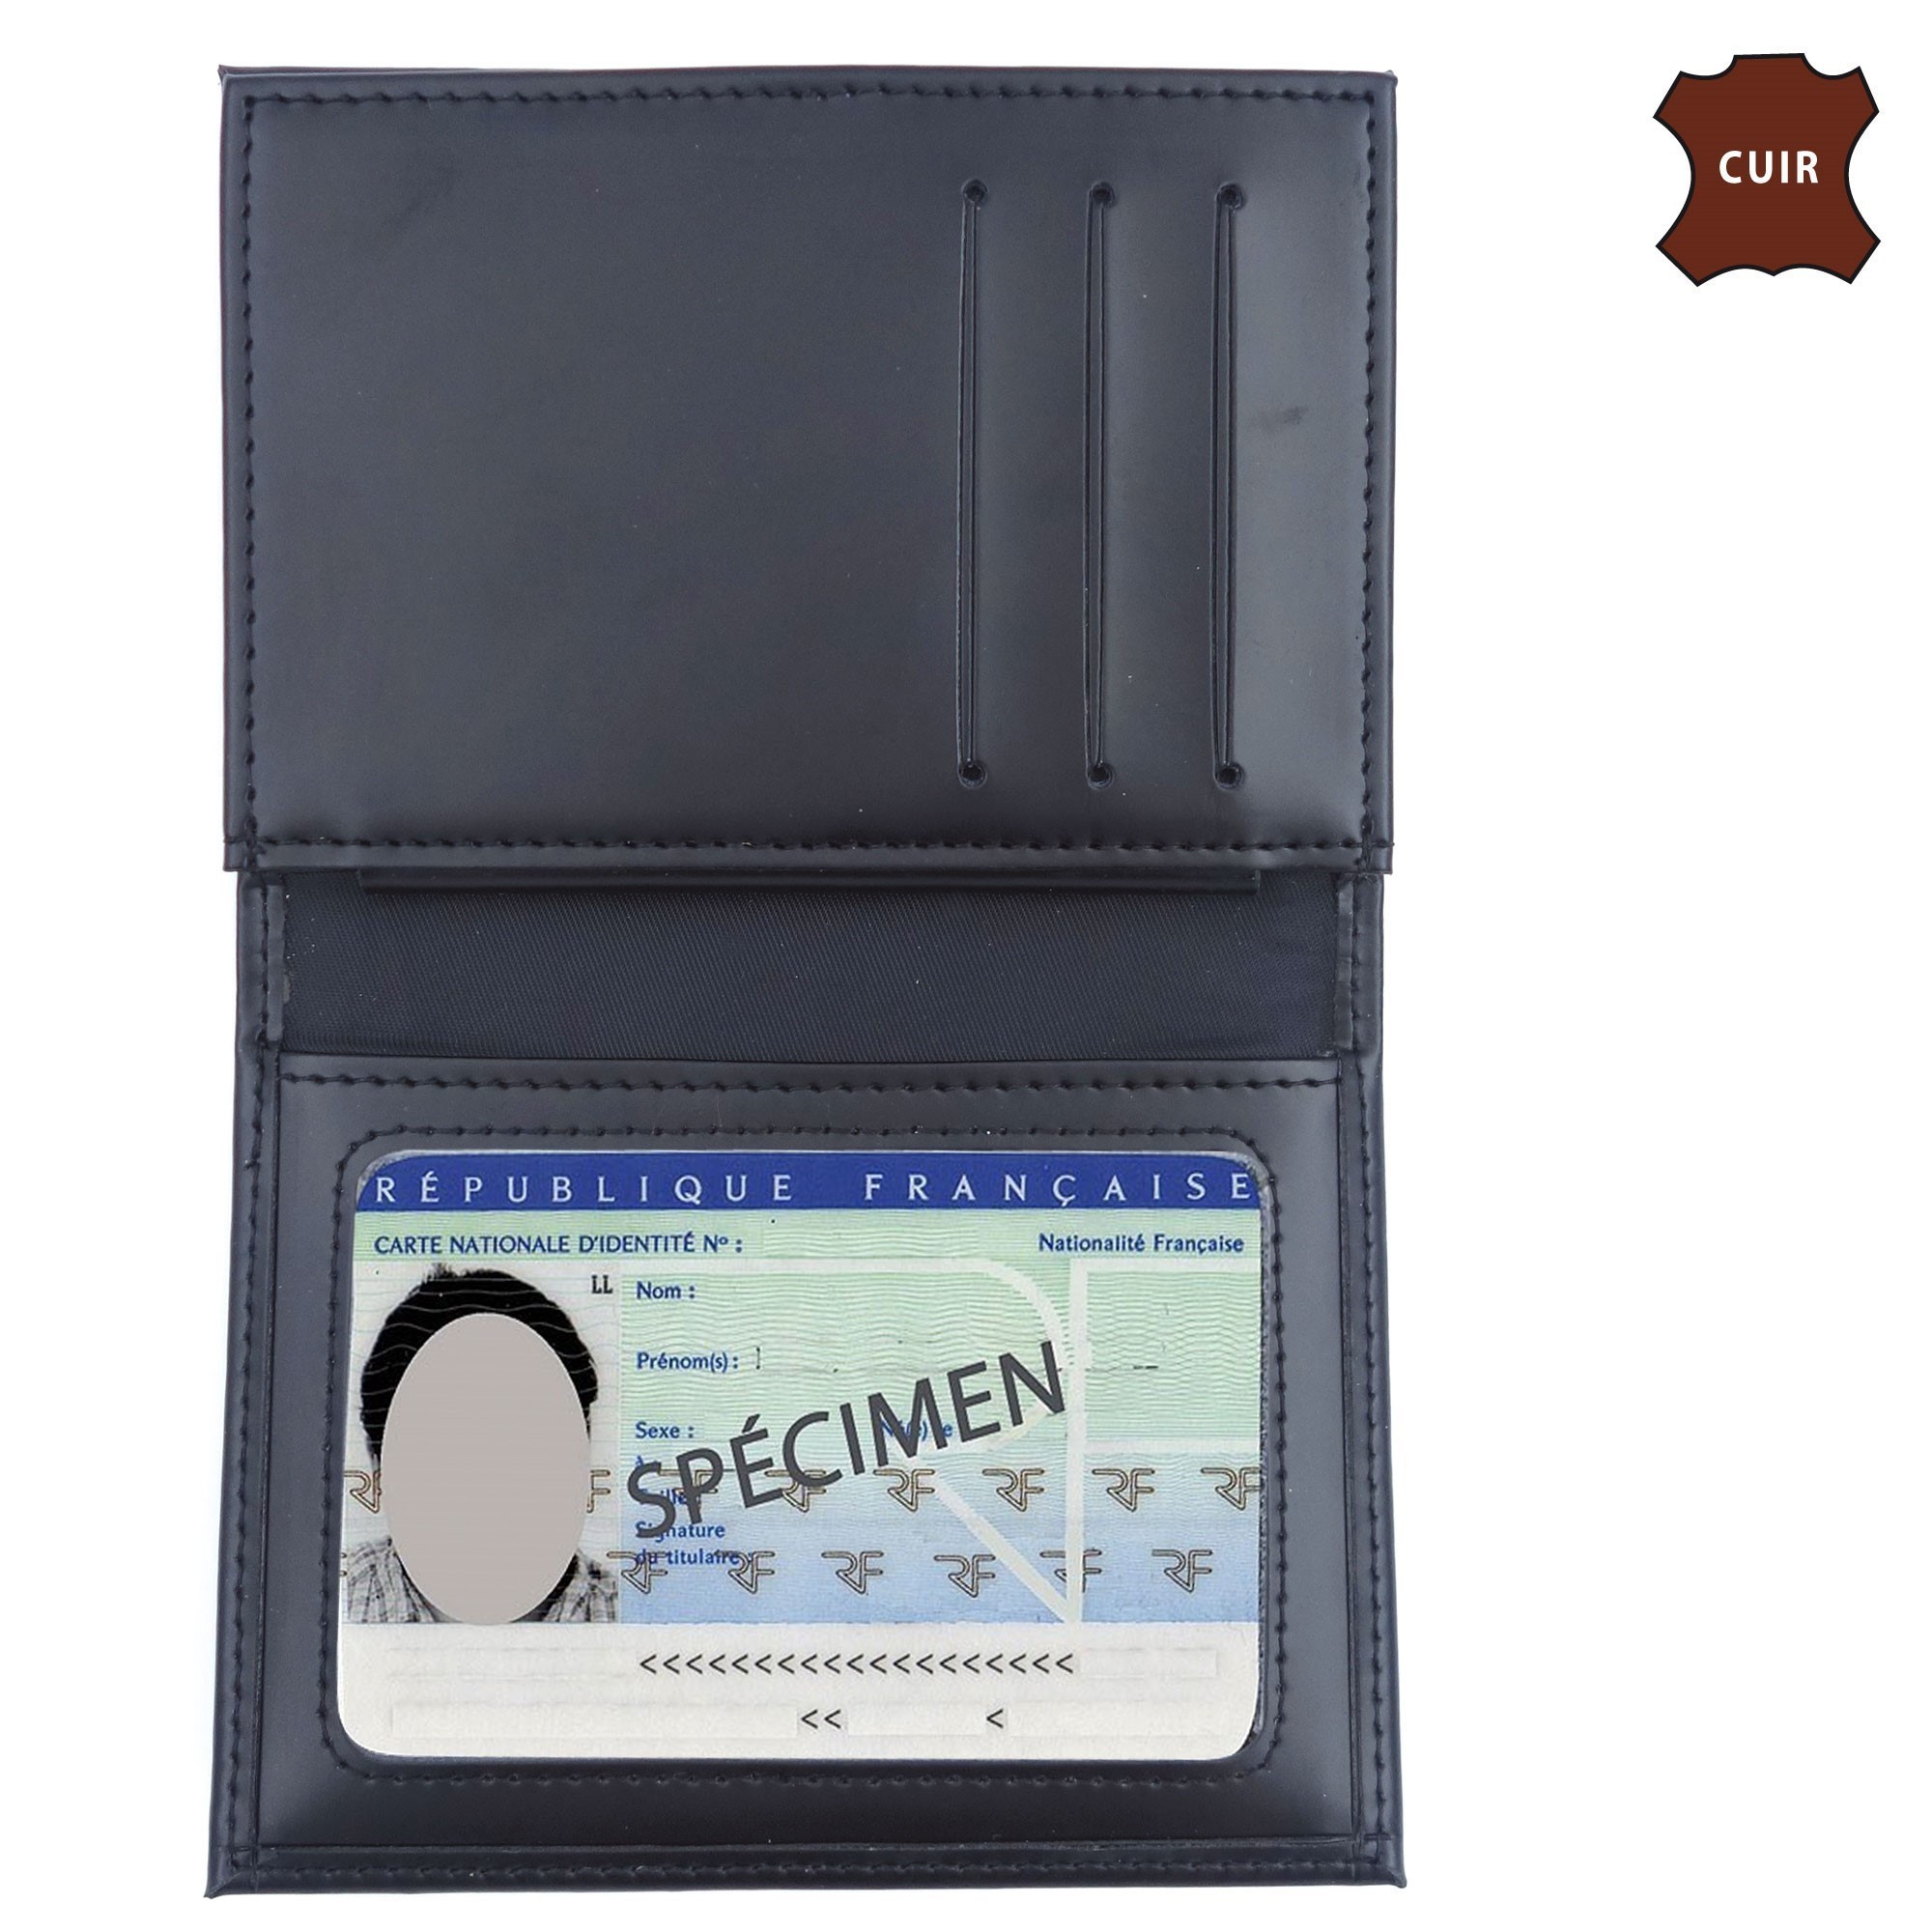 Porte carte grise 3 volets - ref. 129 - Dim. 13 x 27,5 cm - Agents